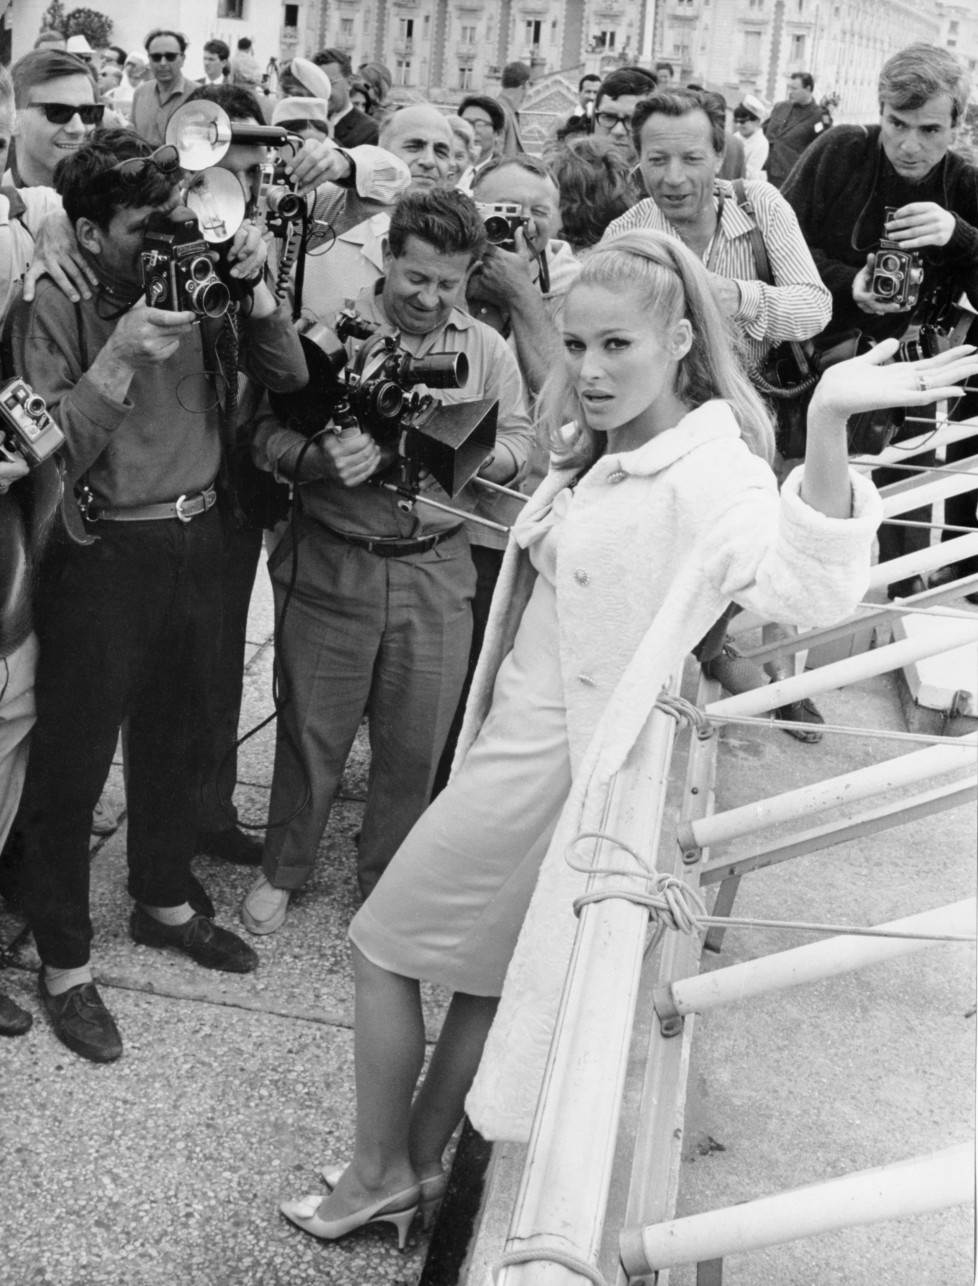 ZUM 80. GEBURTSTAG DER SCHWEIZER FILMSCHAUSPIELERIN URSULA ANDRESS AM SAMSTAG, 19. MAERZ 2016, STELLEN WIR IHNEN FOLGENDES BILDMATERIAL ZUR VERFUEGUNG - Press photographers surround Swiss-born actress Ursula Andress on the Croisette seafront, Cannes, on May 21, 1965, after her arrival to attend the International Film Festival. (AP Photo/Levy)